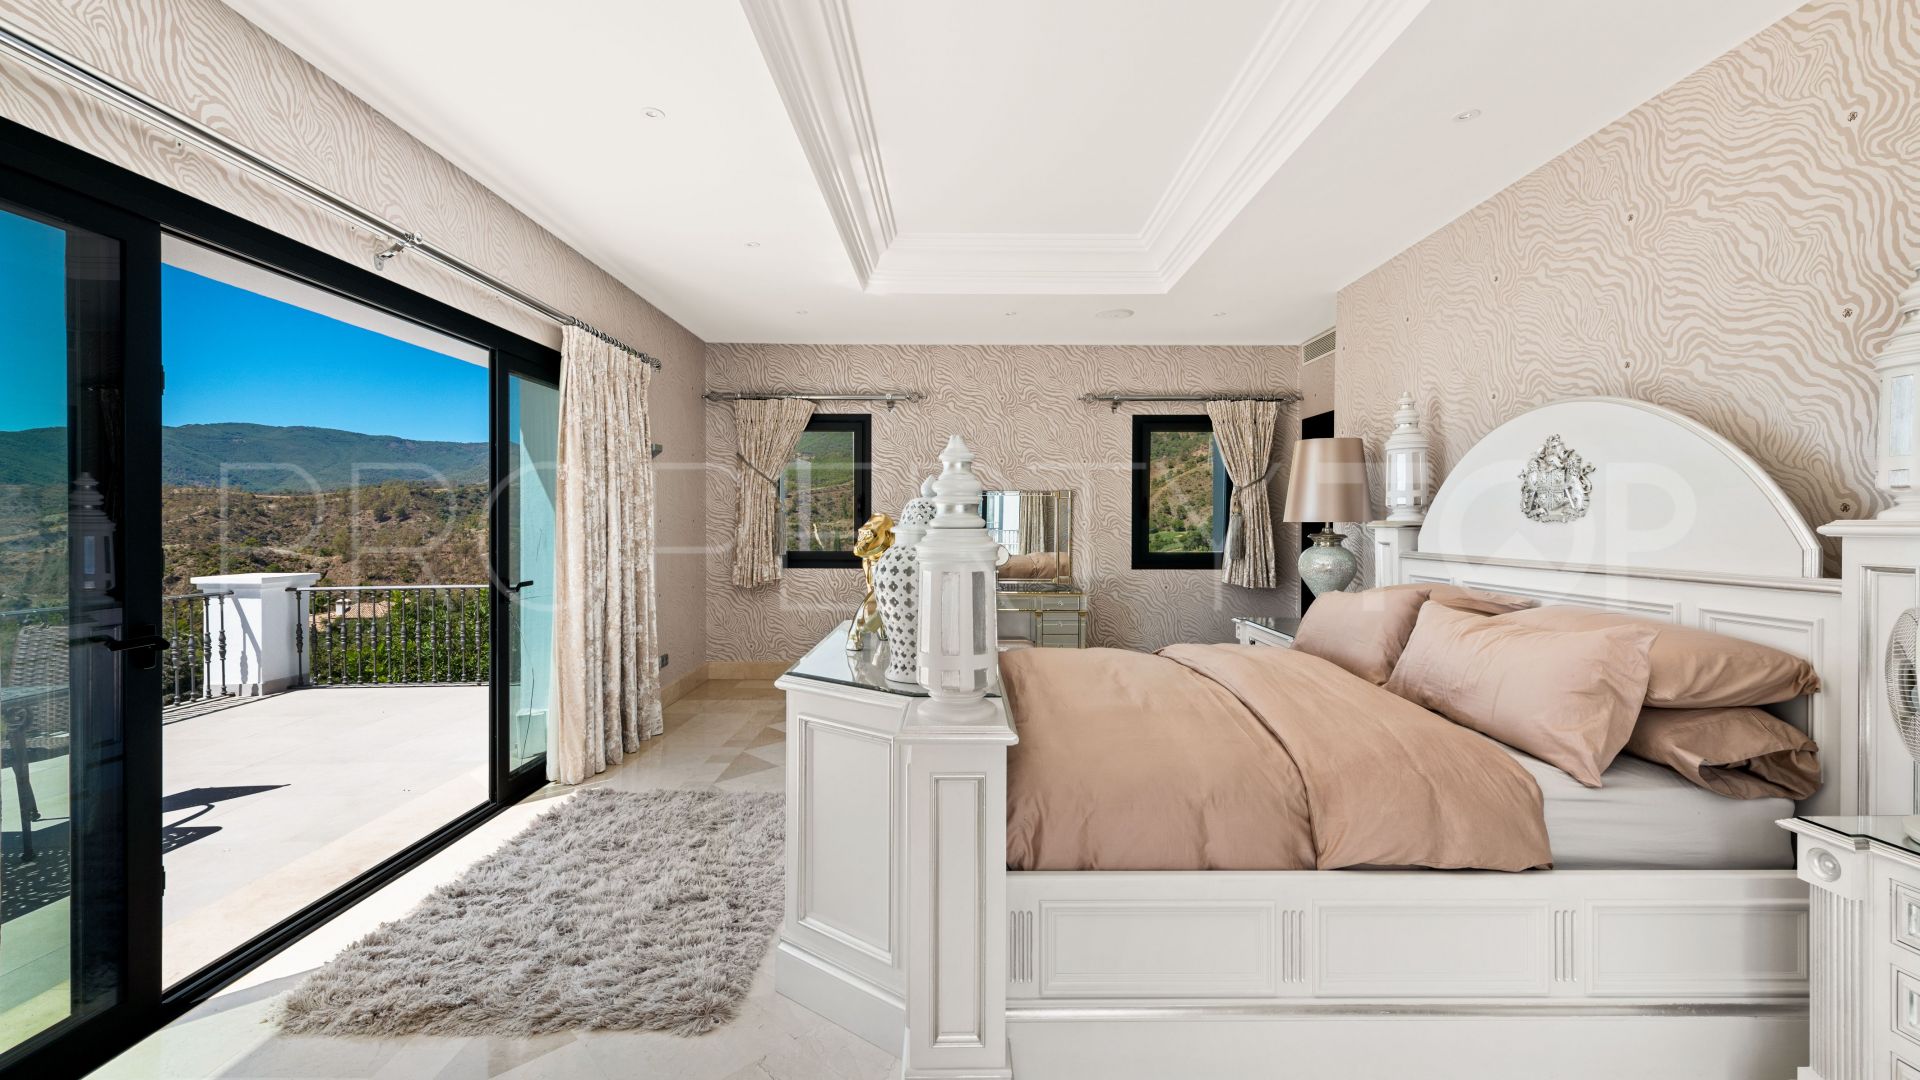 6 bedrooms villa for sale in La Zagaleta